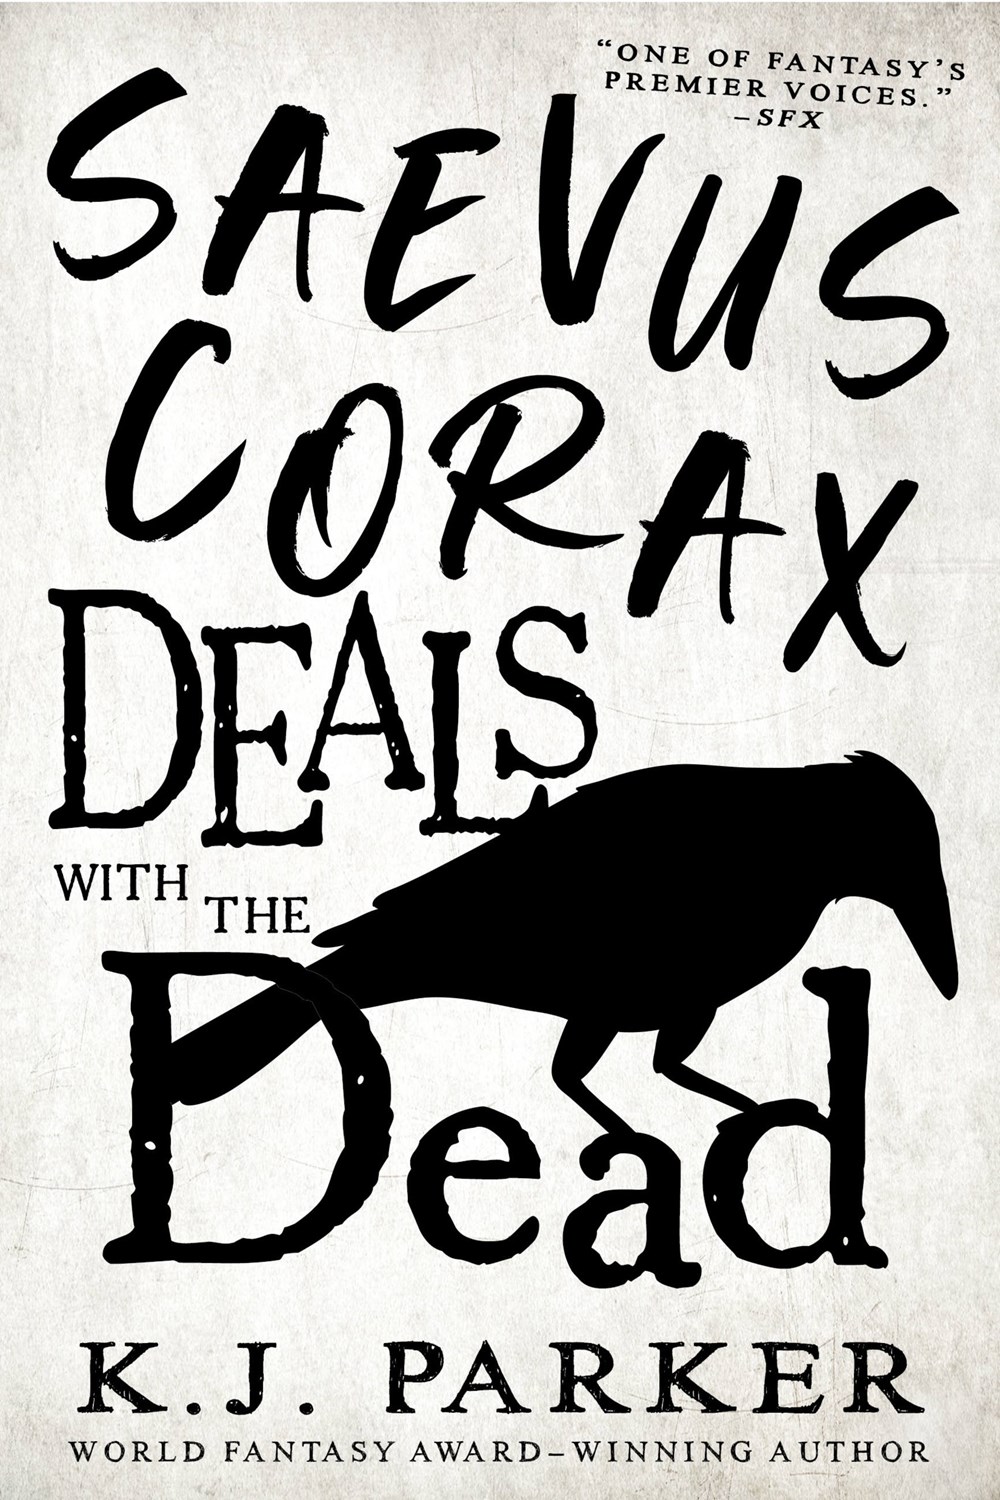 K. J. Parker: Saevus Corax Deals with the Dead (EBook, 2023, Little, Brown Books)